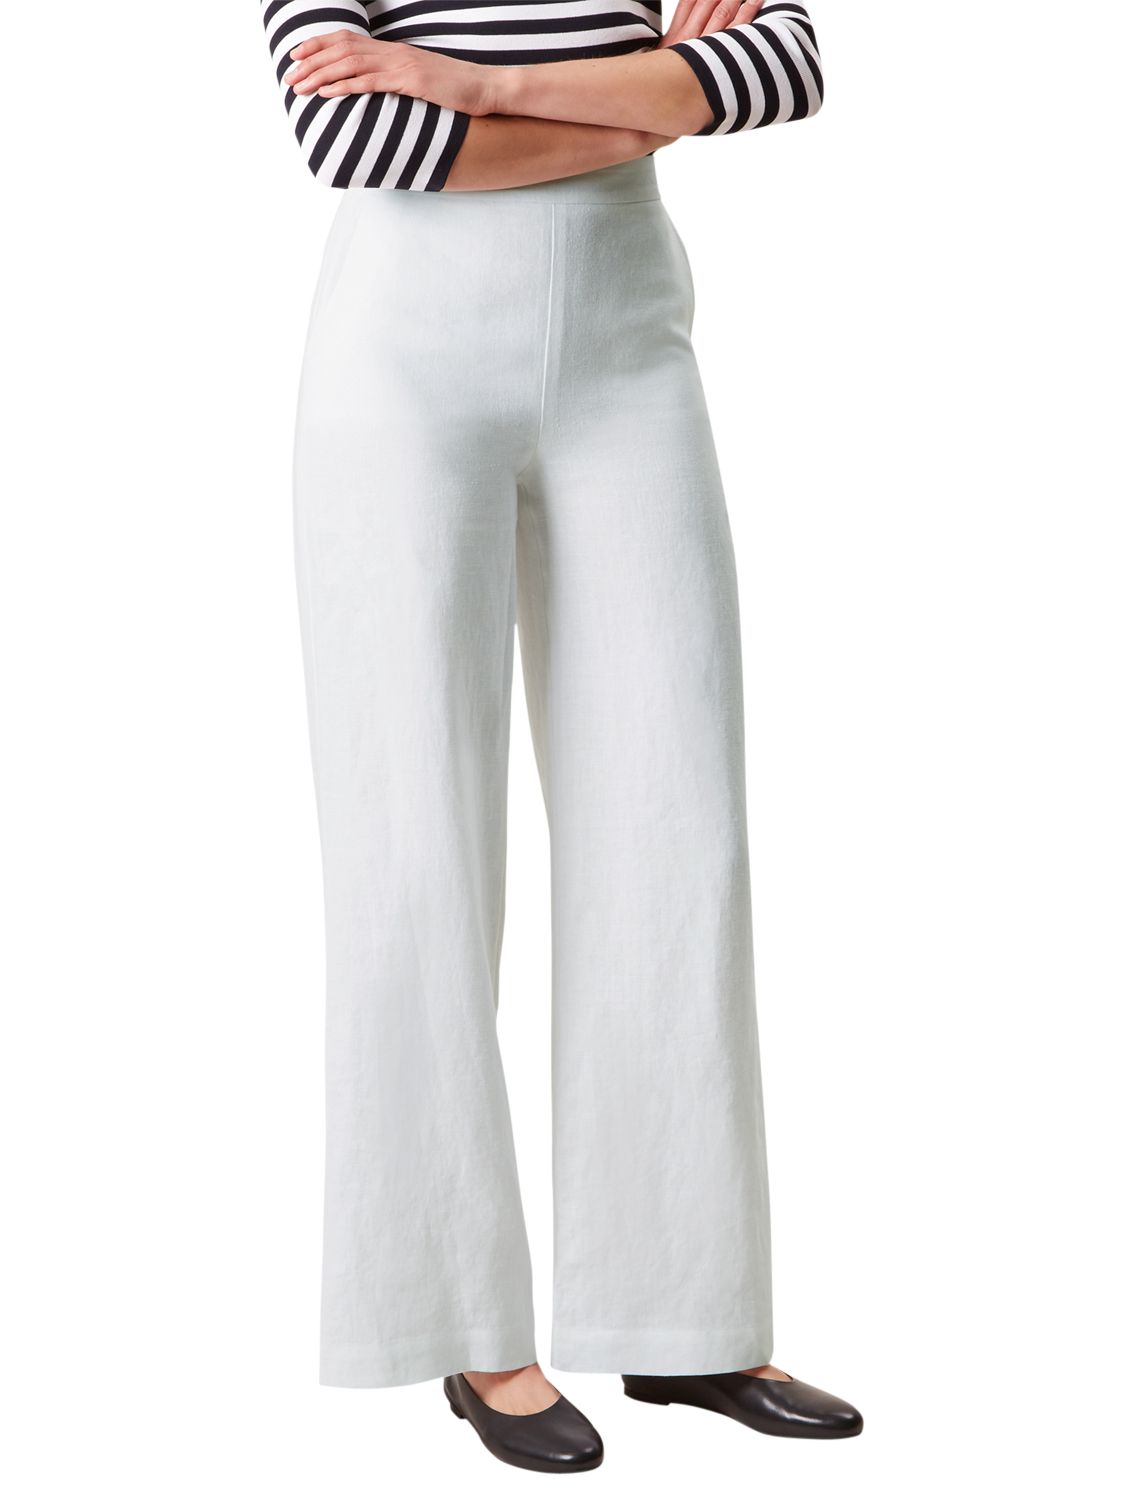 Hobbs Anise Linen Trousers, White, 18